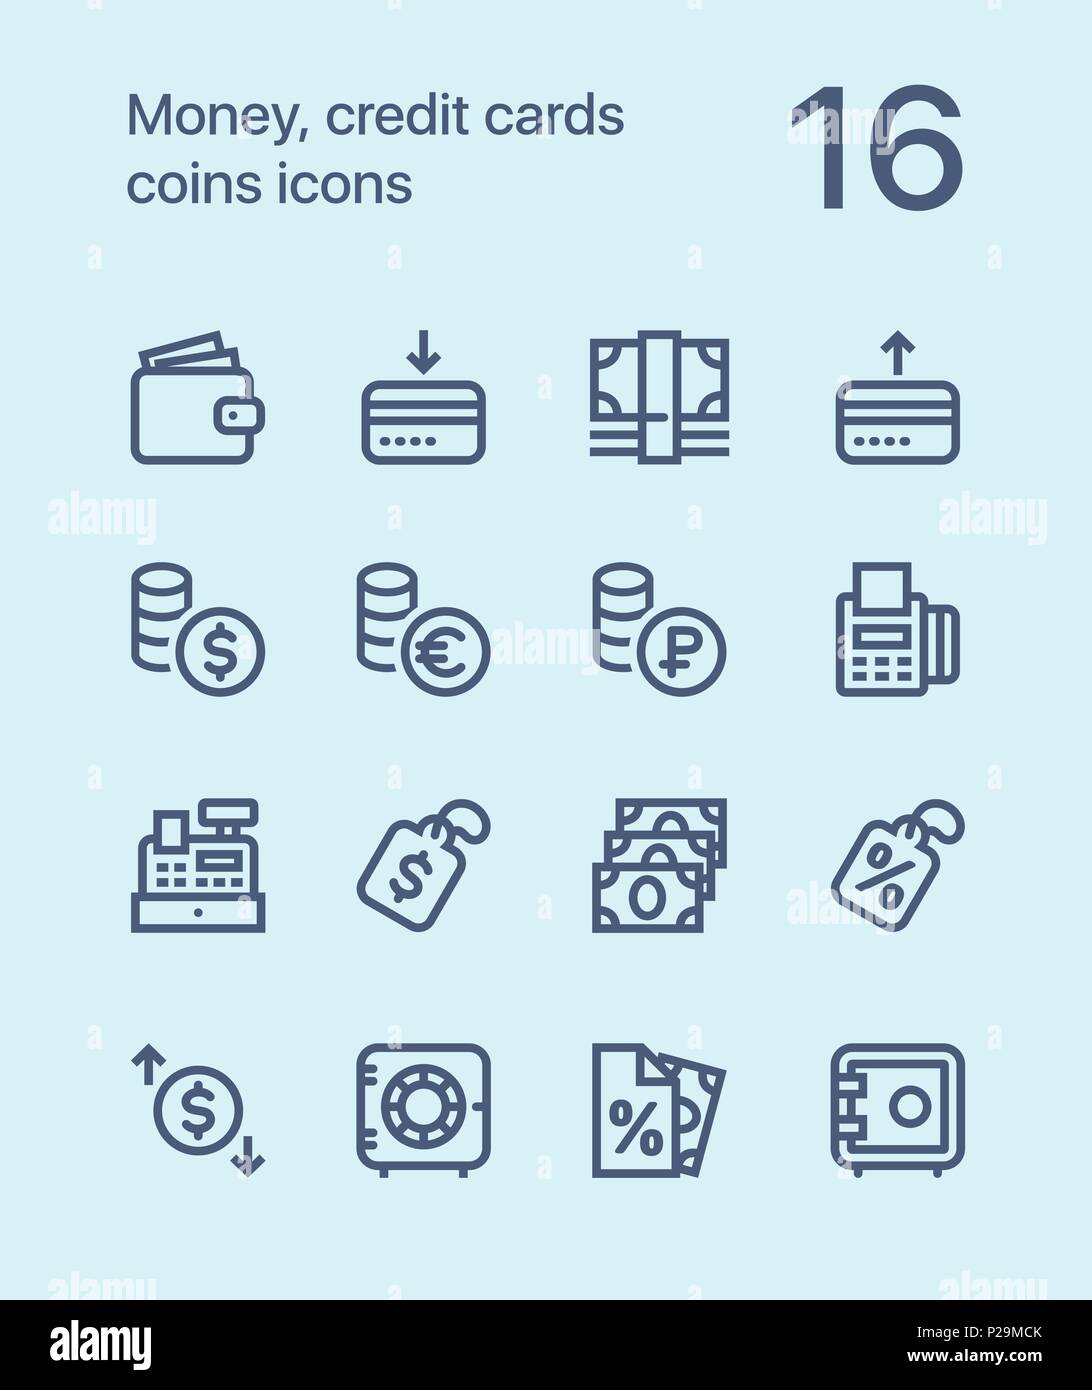 Aperçu de l'argent, cartes de crédit, pièces d'icônes pour le web et les terminaux mobiles pack 2 Illustration de Vecteur